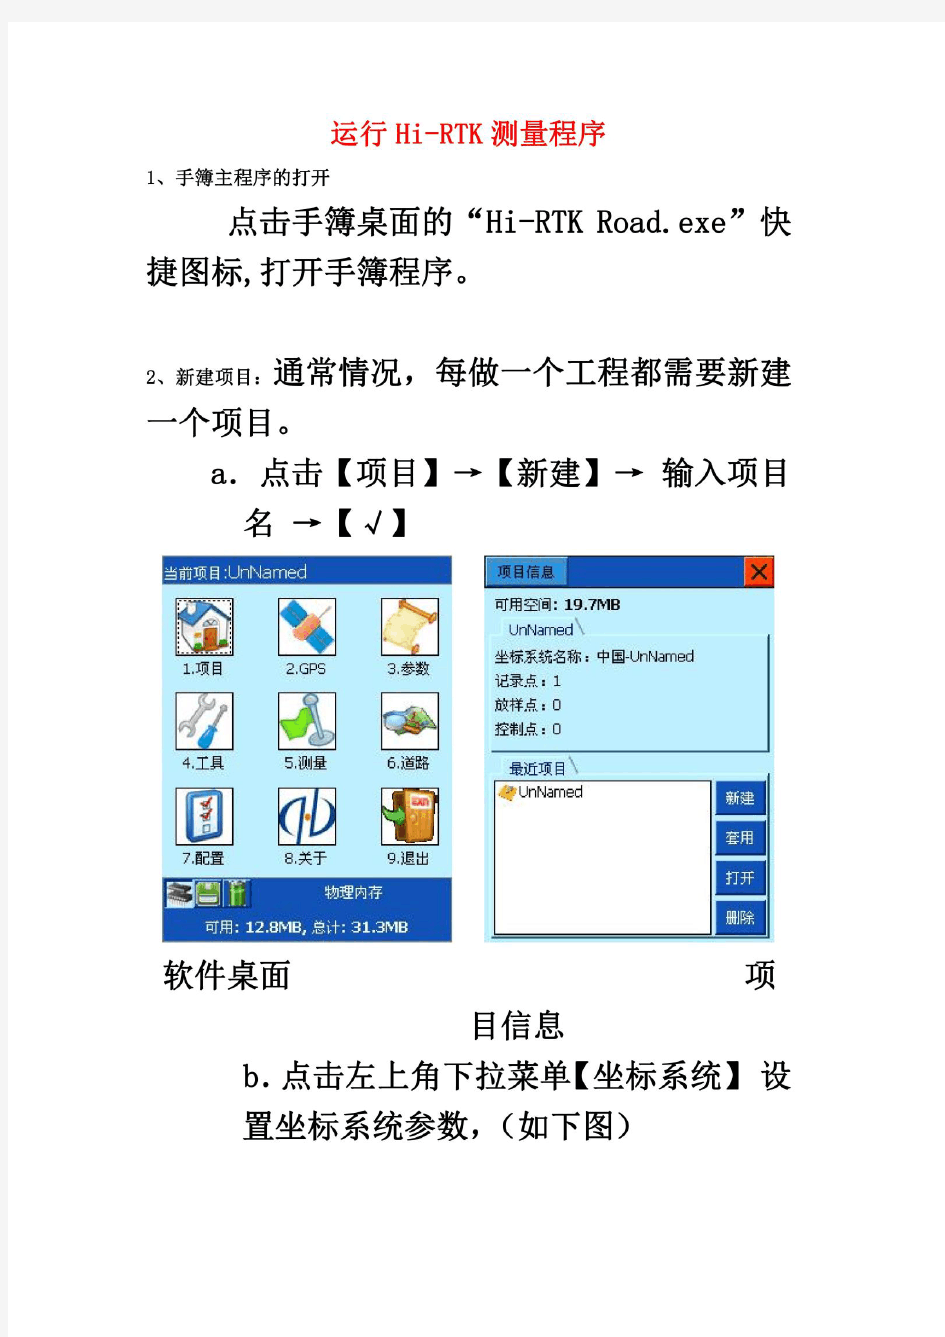 中海达操作规程(Hi-RTK手簿软件说明书)